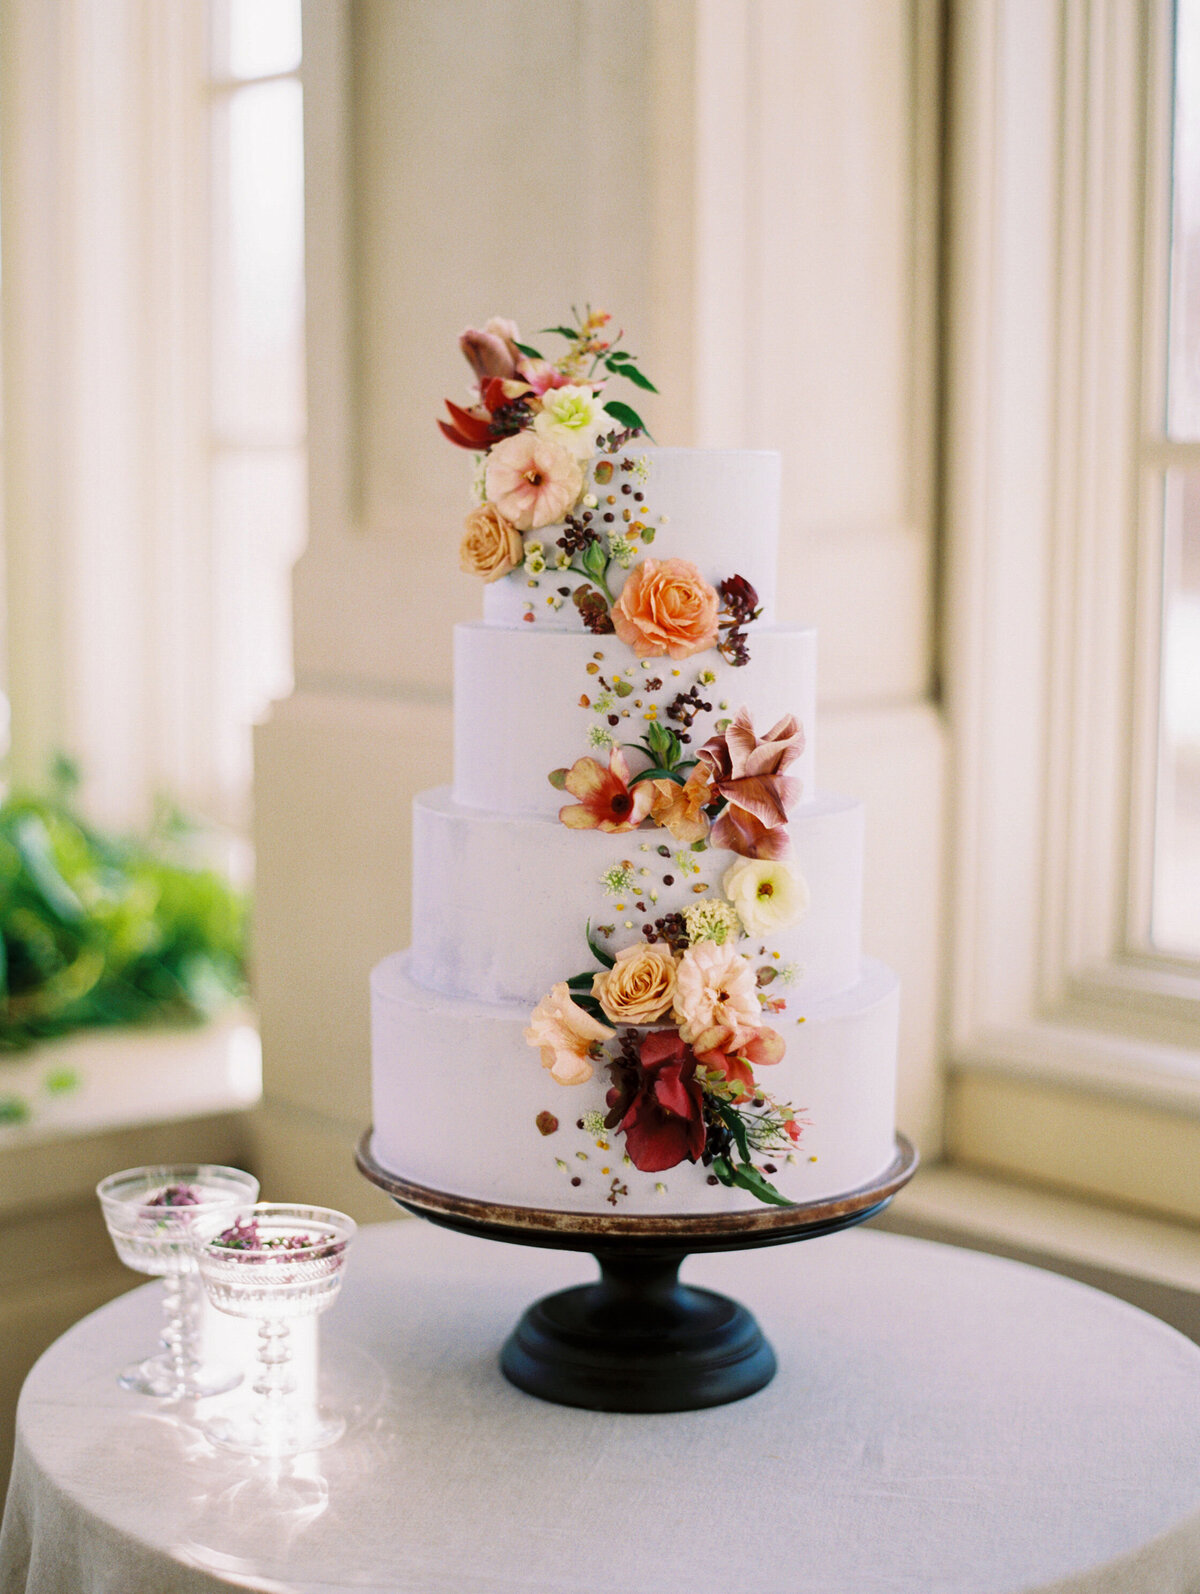 max-owens-design-flower-installations-wedding-12-cake